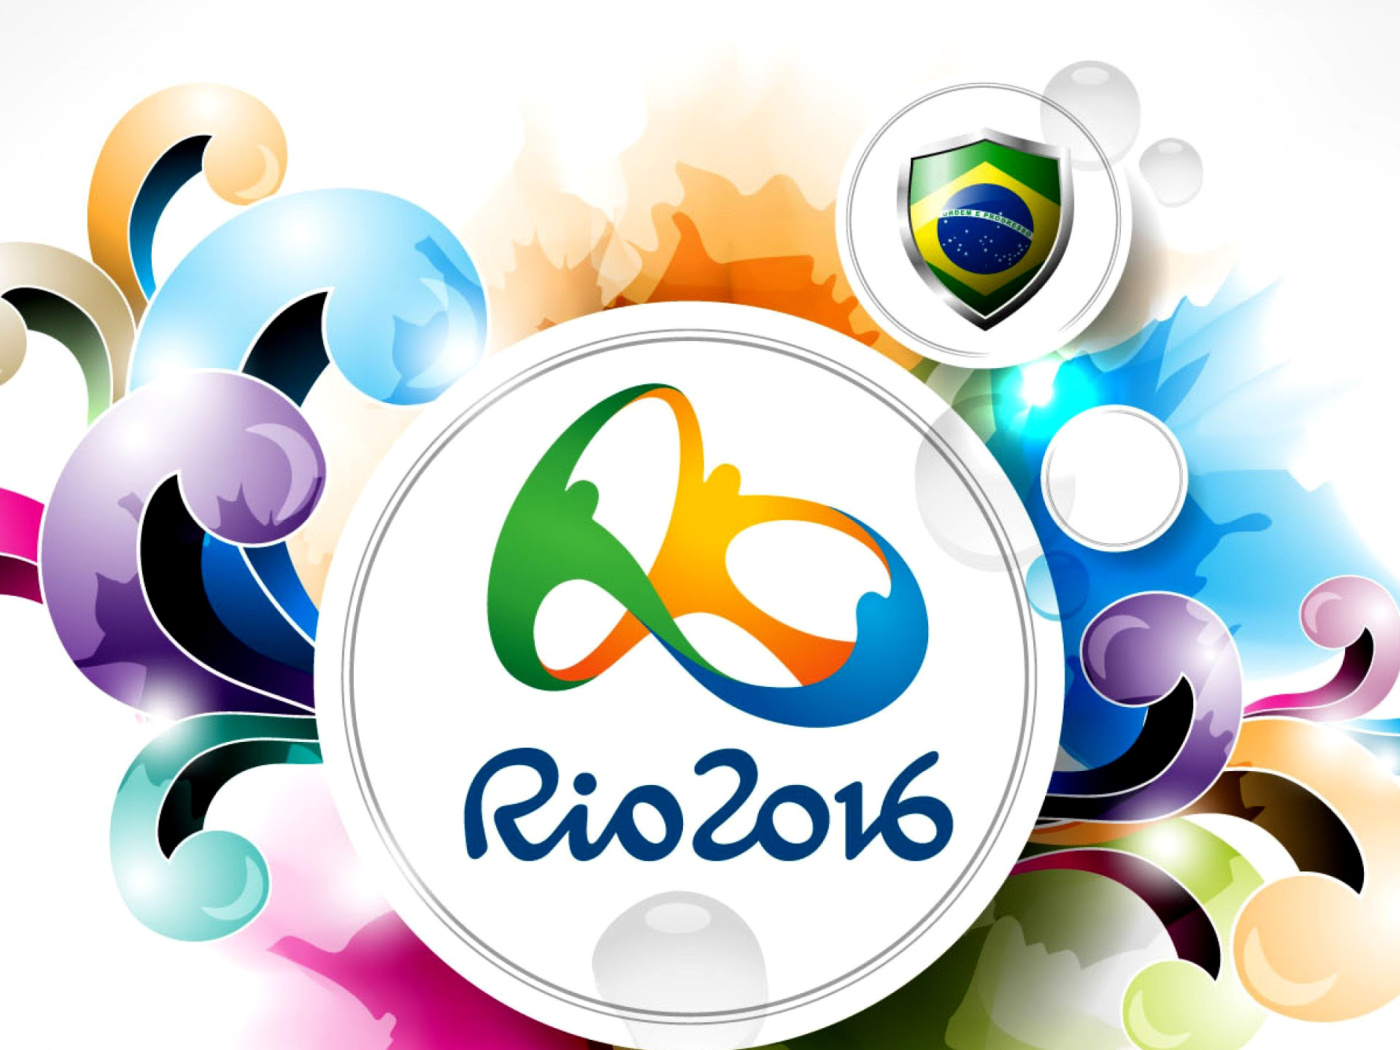 Обои Olympic Games Rio 2016 1400x1050